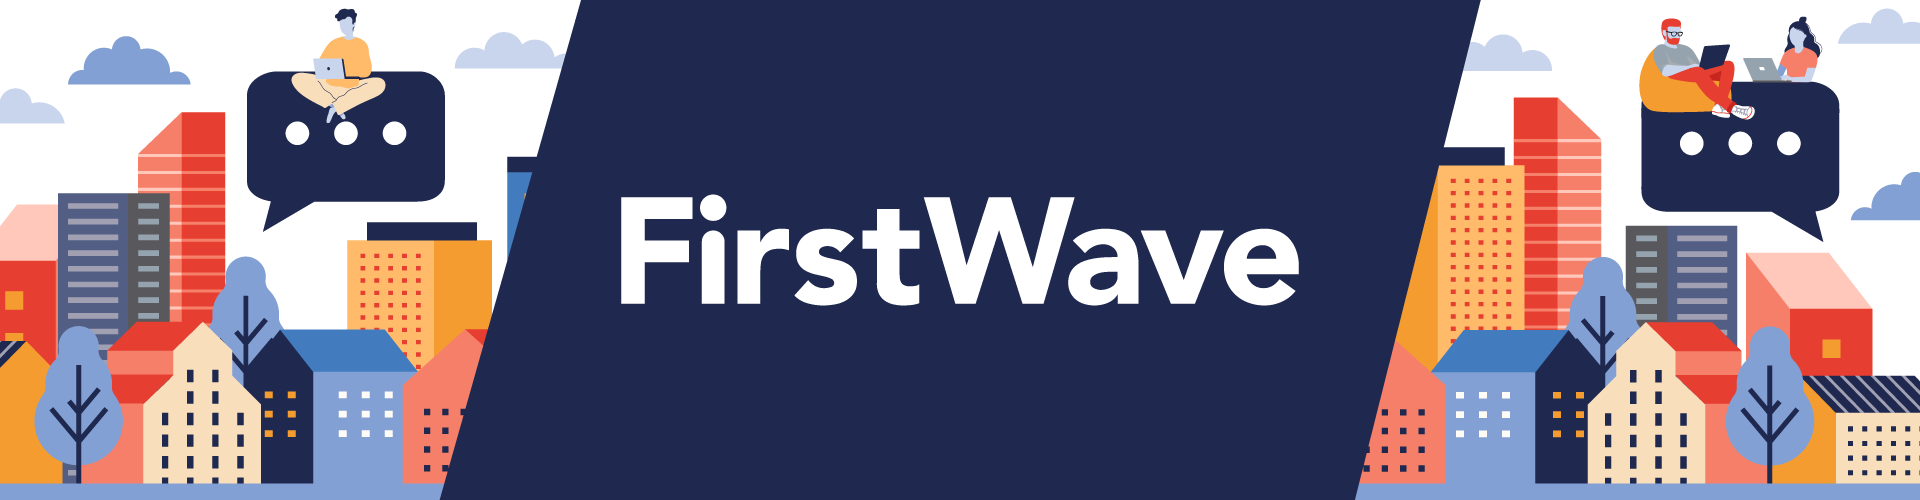 FirstWave Welcome Banner